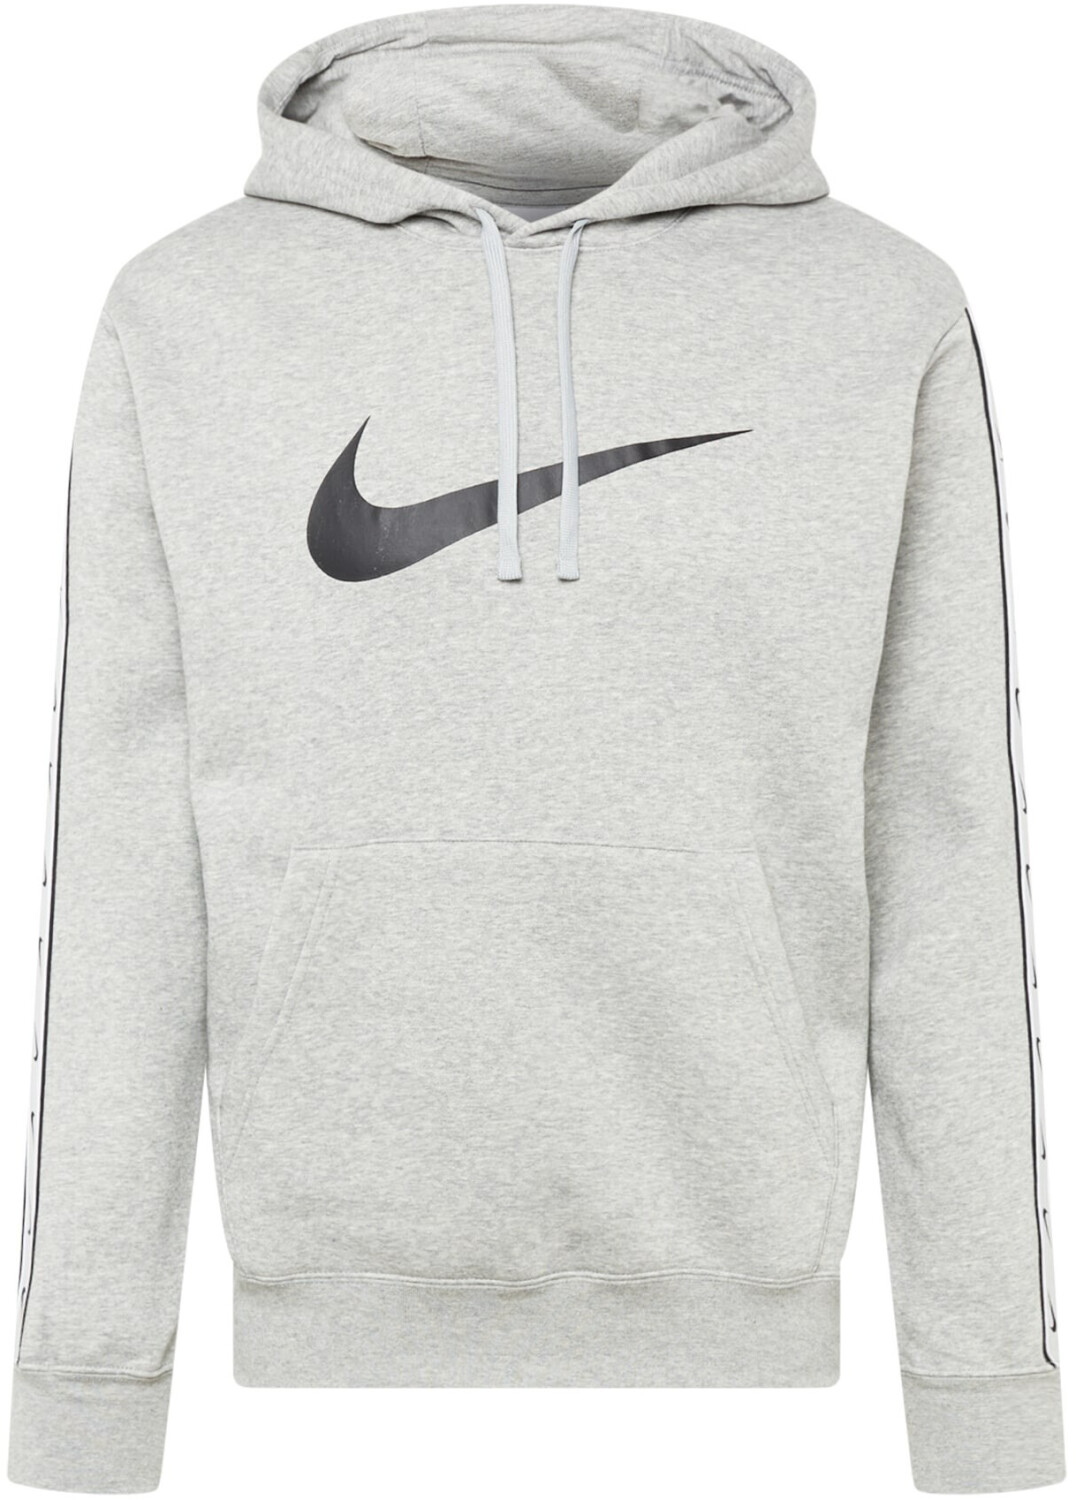 (DX2028) Hoodie grey Preisvergleich Fleece | Nike 69,90 heather/black bei dark Pullover € ab